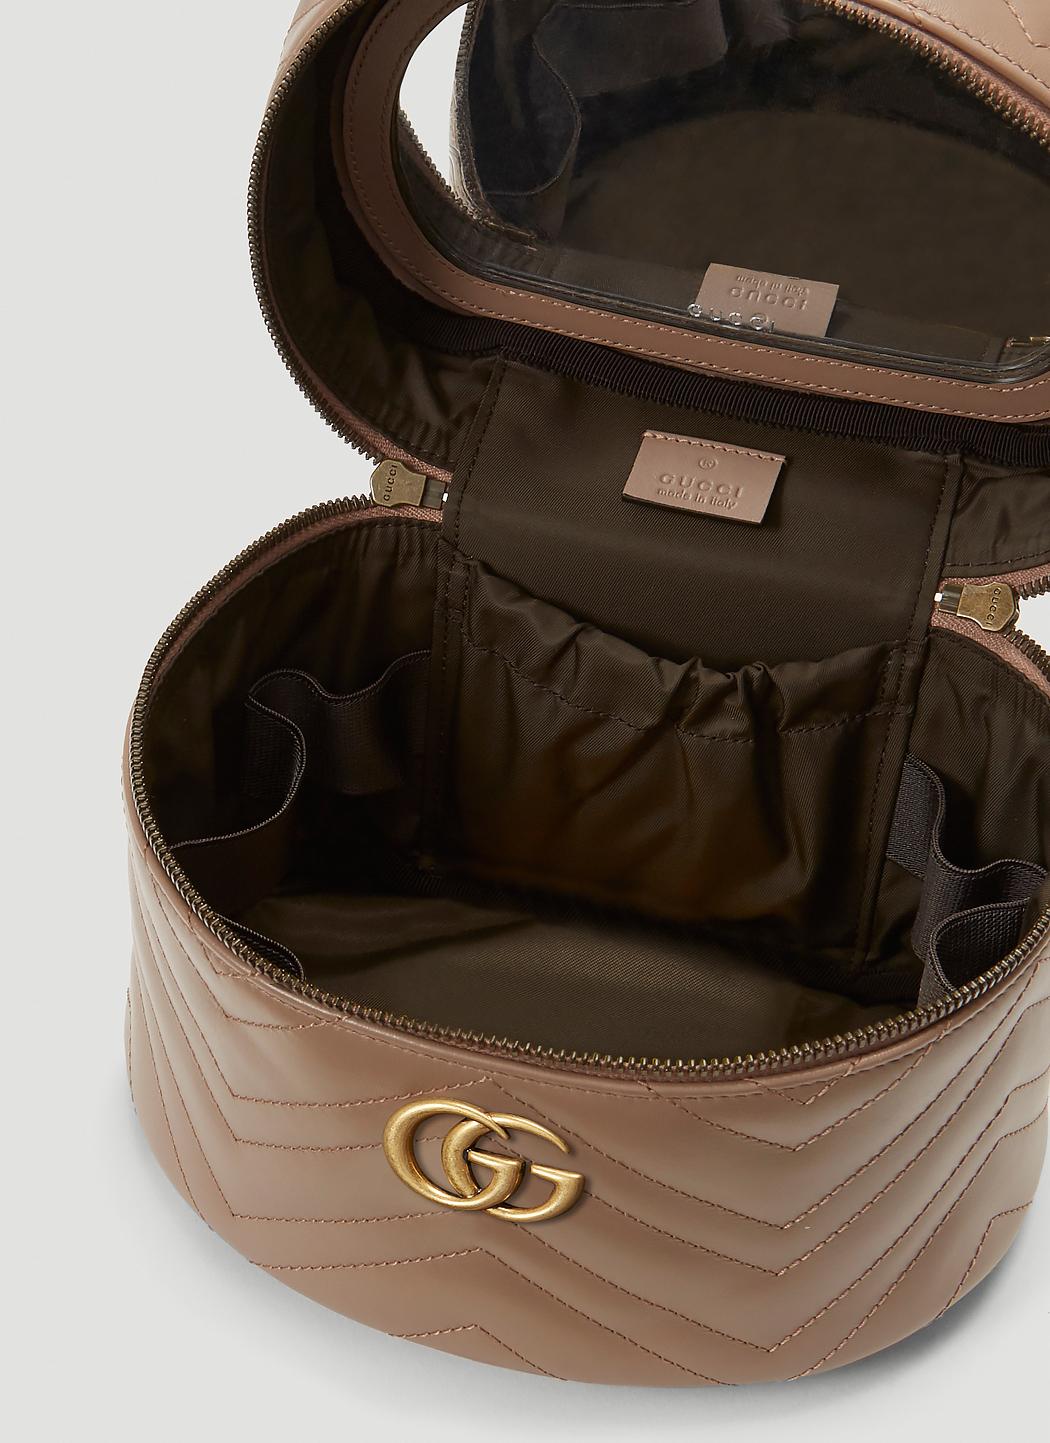 GG Cosmetics Case in Beige - Gucci